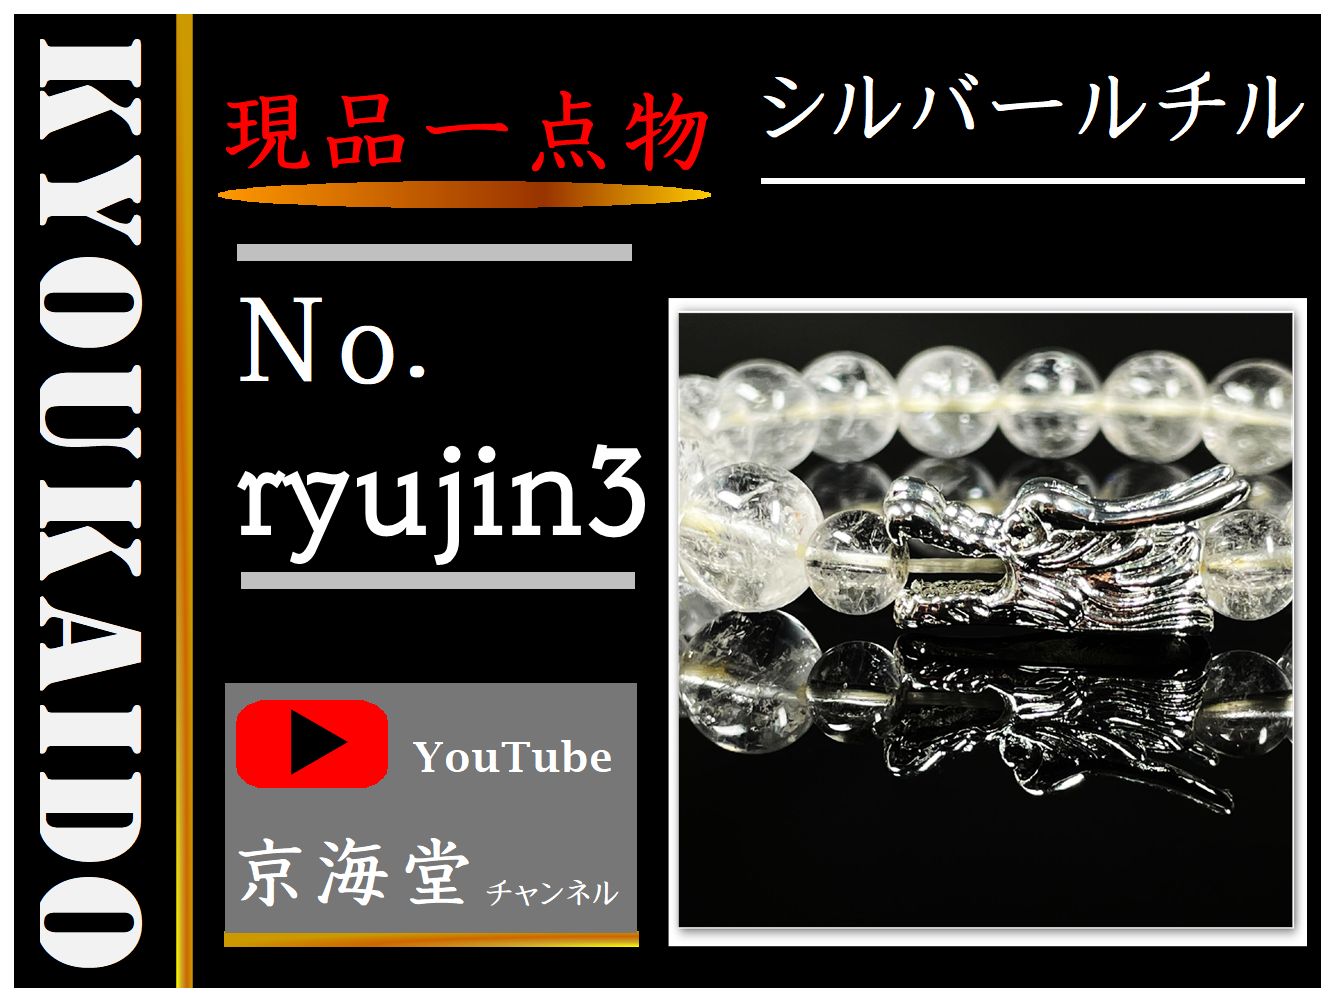 龍シルバールチル ryujin3